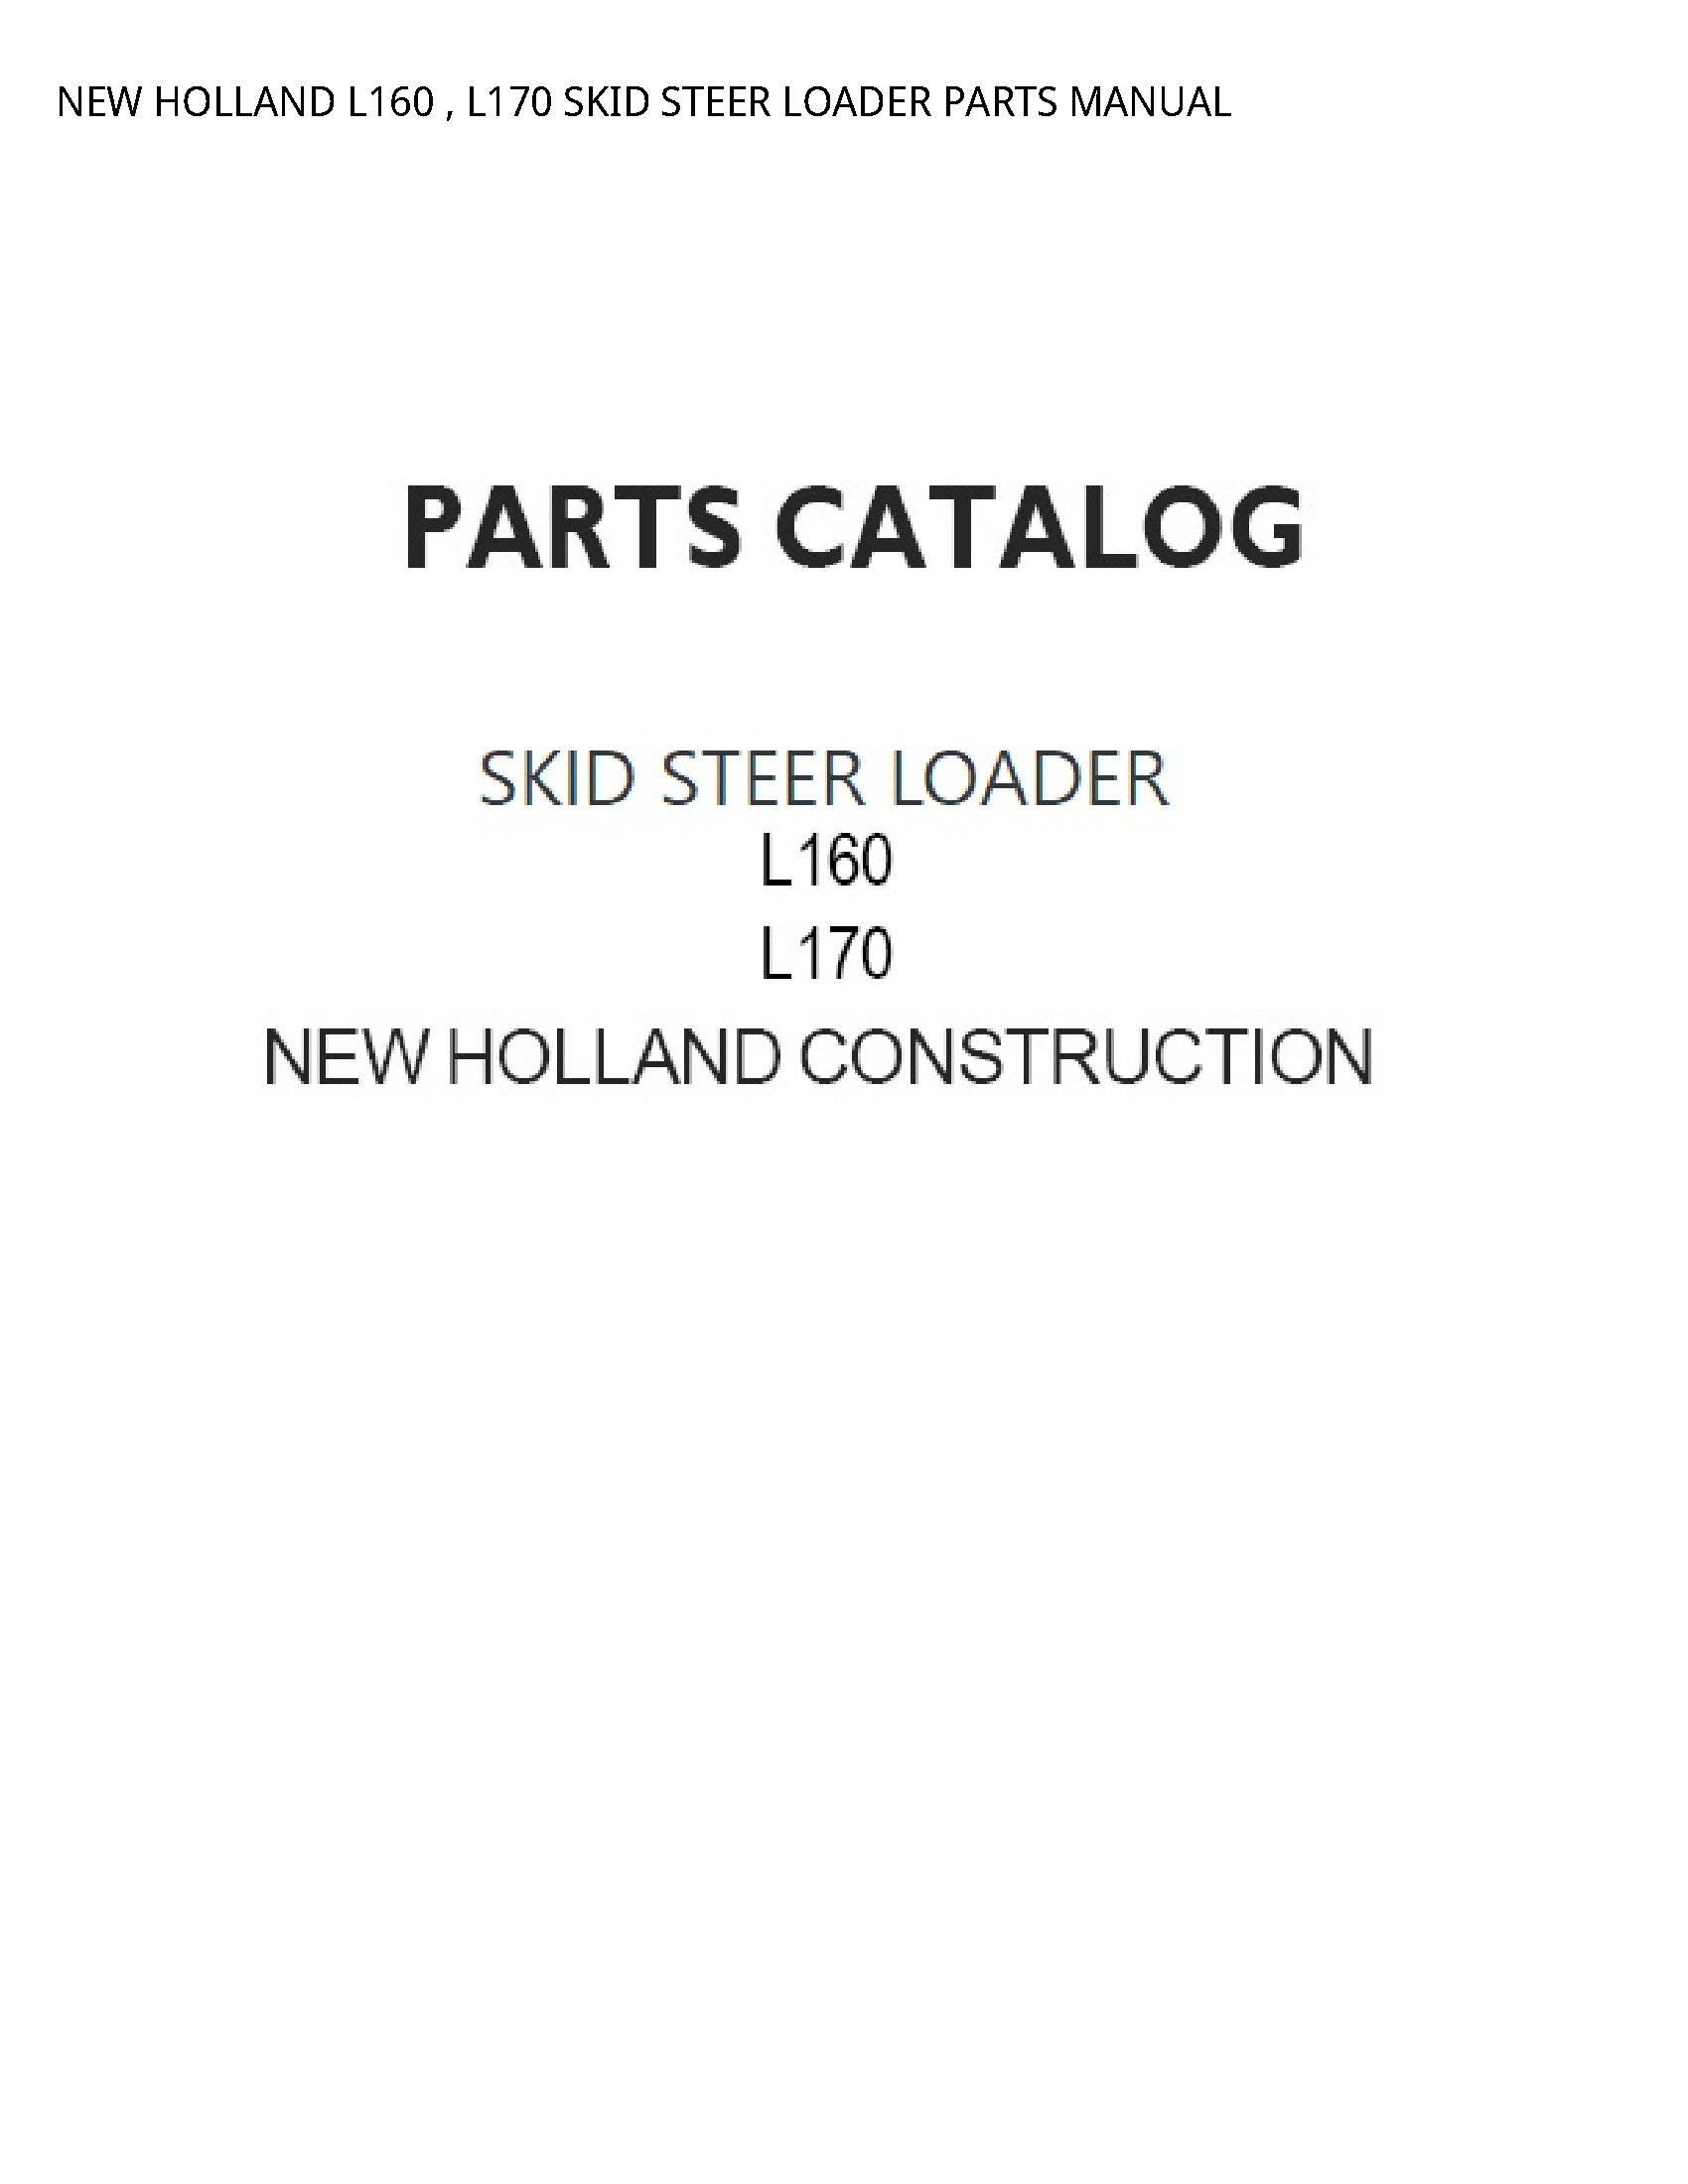 New Holland L160 SKID STEER LOADER PARTS manual